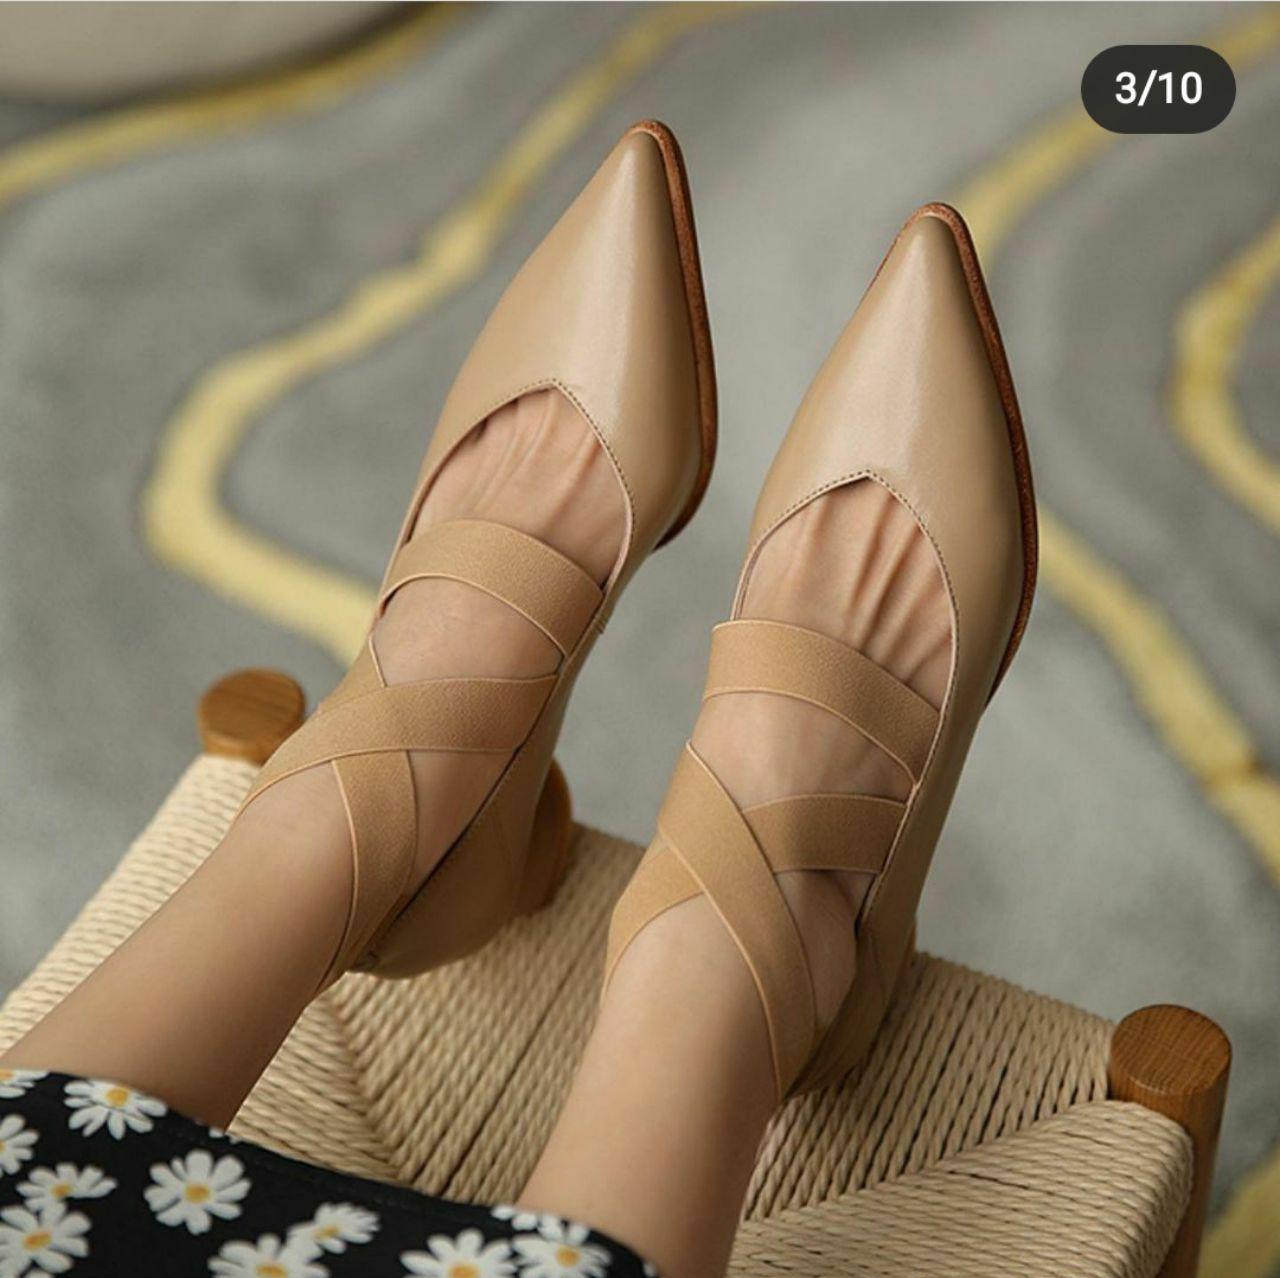  کفش زنانه مجلسی پاشنه دار مدل لورا کد 162